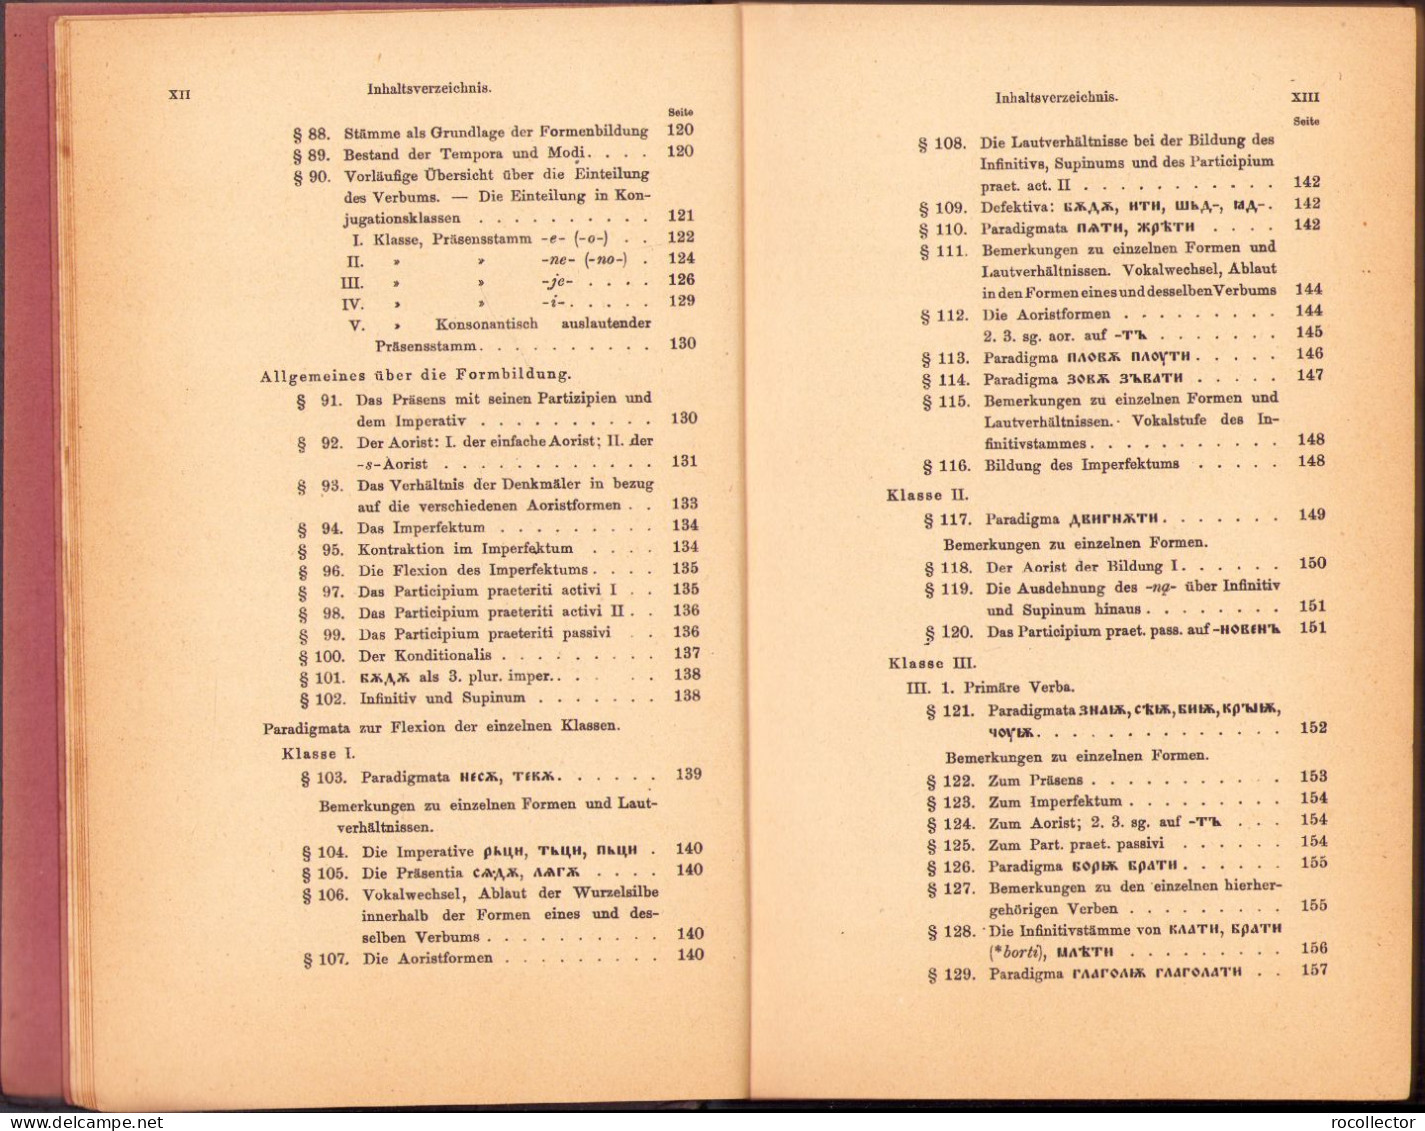 Handbuch der Altbulgarischen (Altkirchenslavischen). Grammatik. Texte. Glossar von A Leskien 1922 Heidelberg C1524